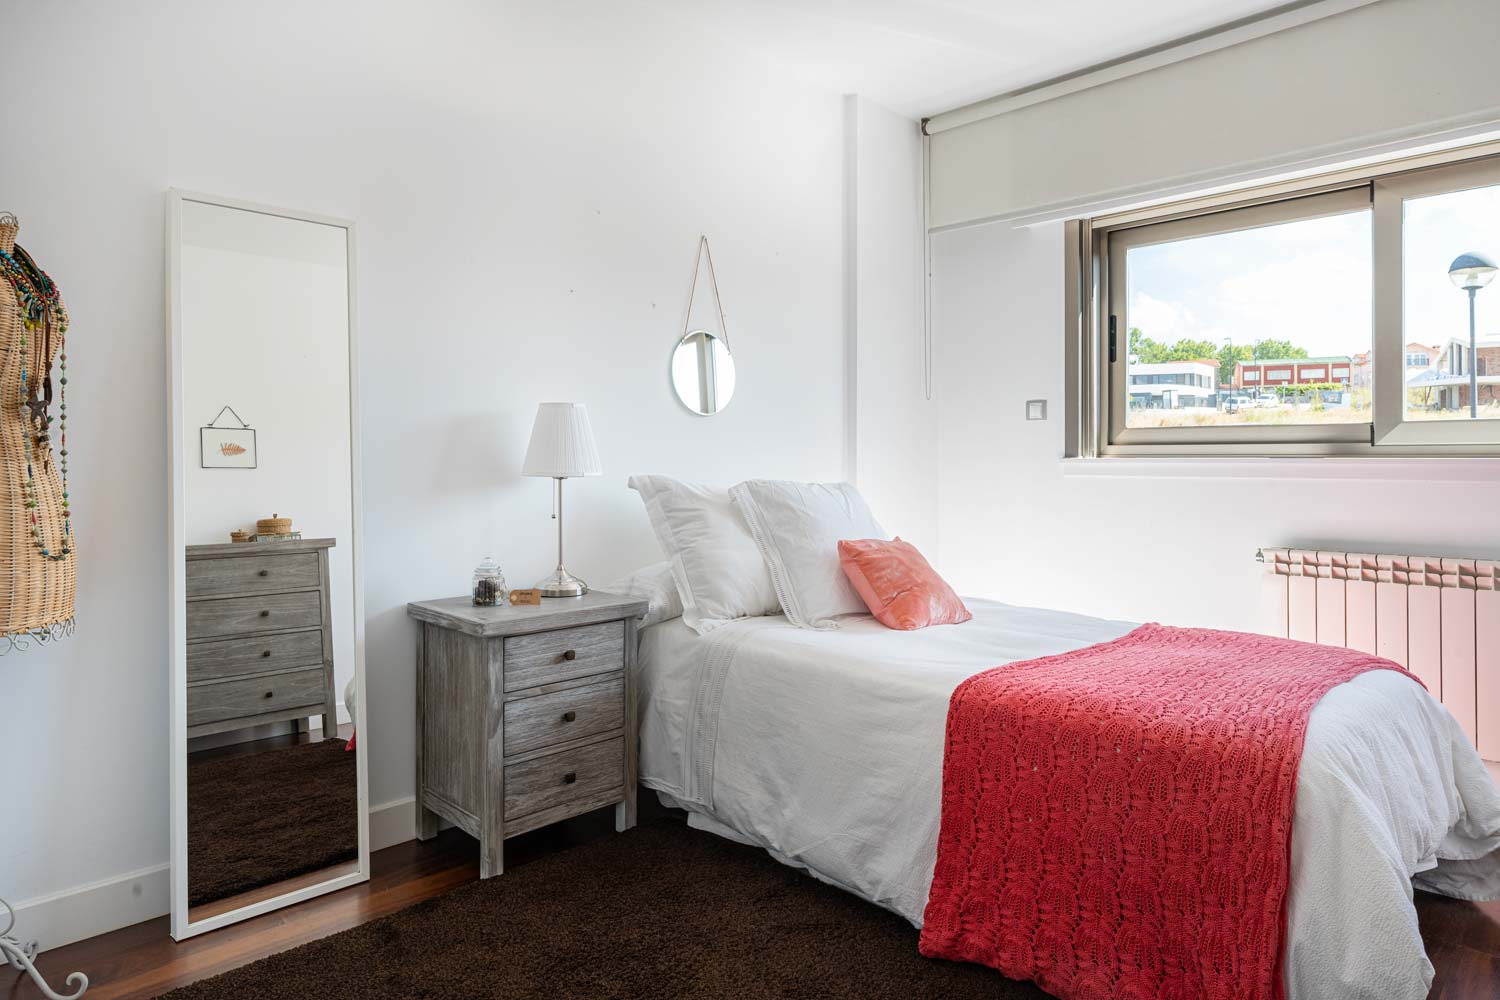 Dormitorio doble con decoración en coral_ Vistas hacia la ventana_unifamiliar Oleiros